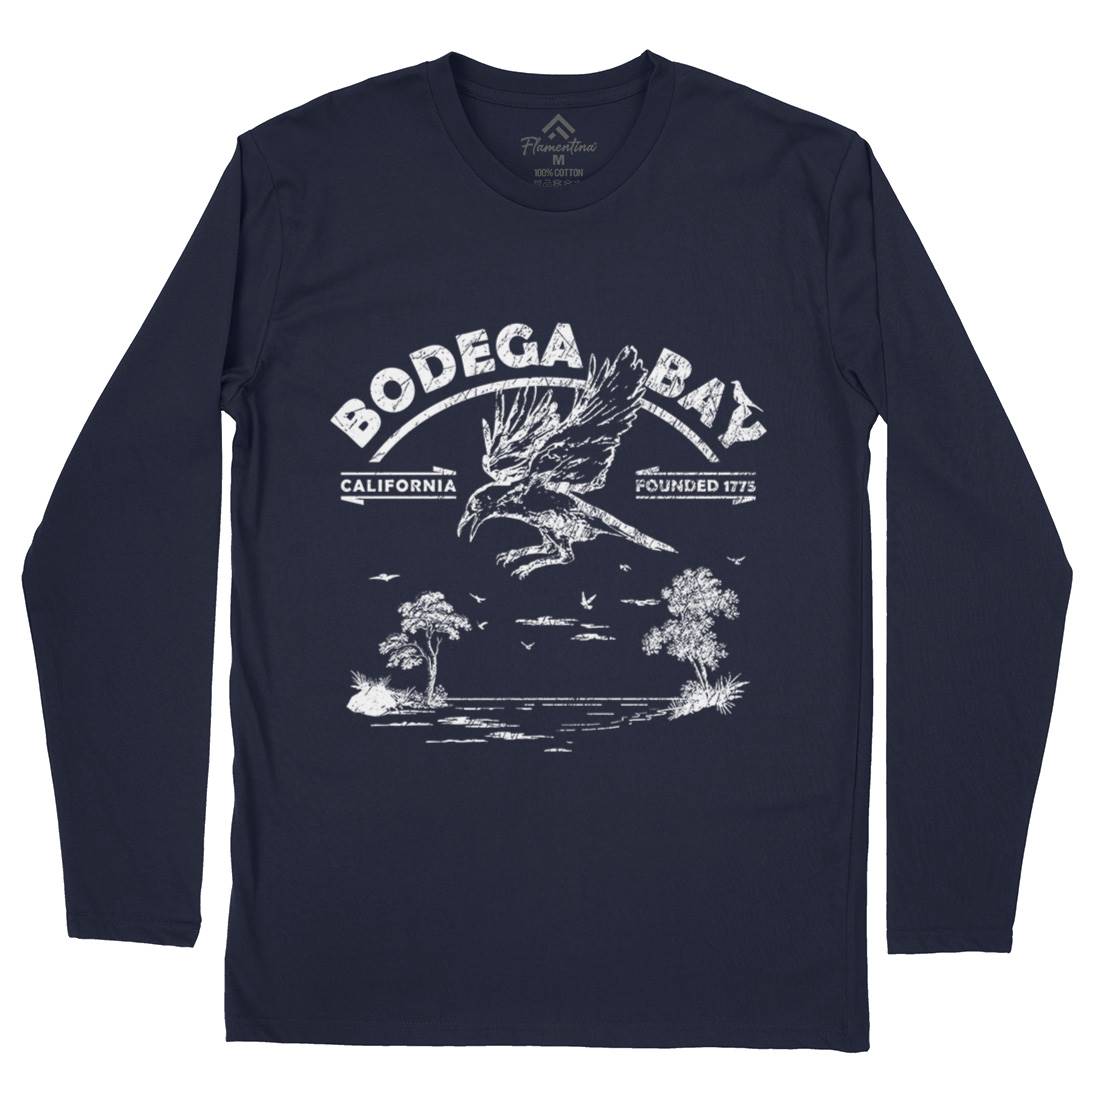 Bodega Bay Mens Long Sleeve T-Shirt Horror D310